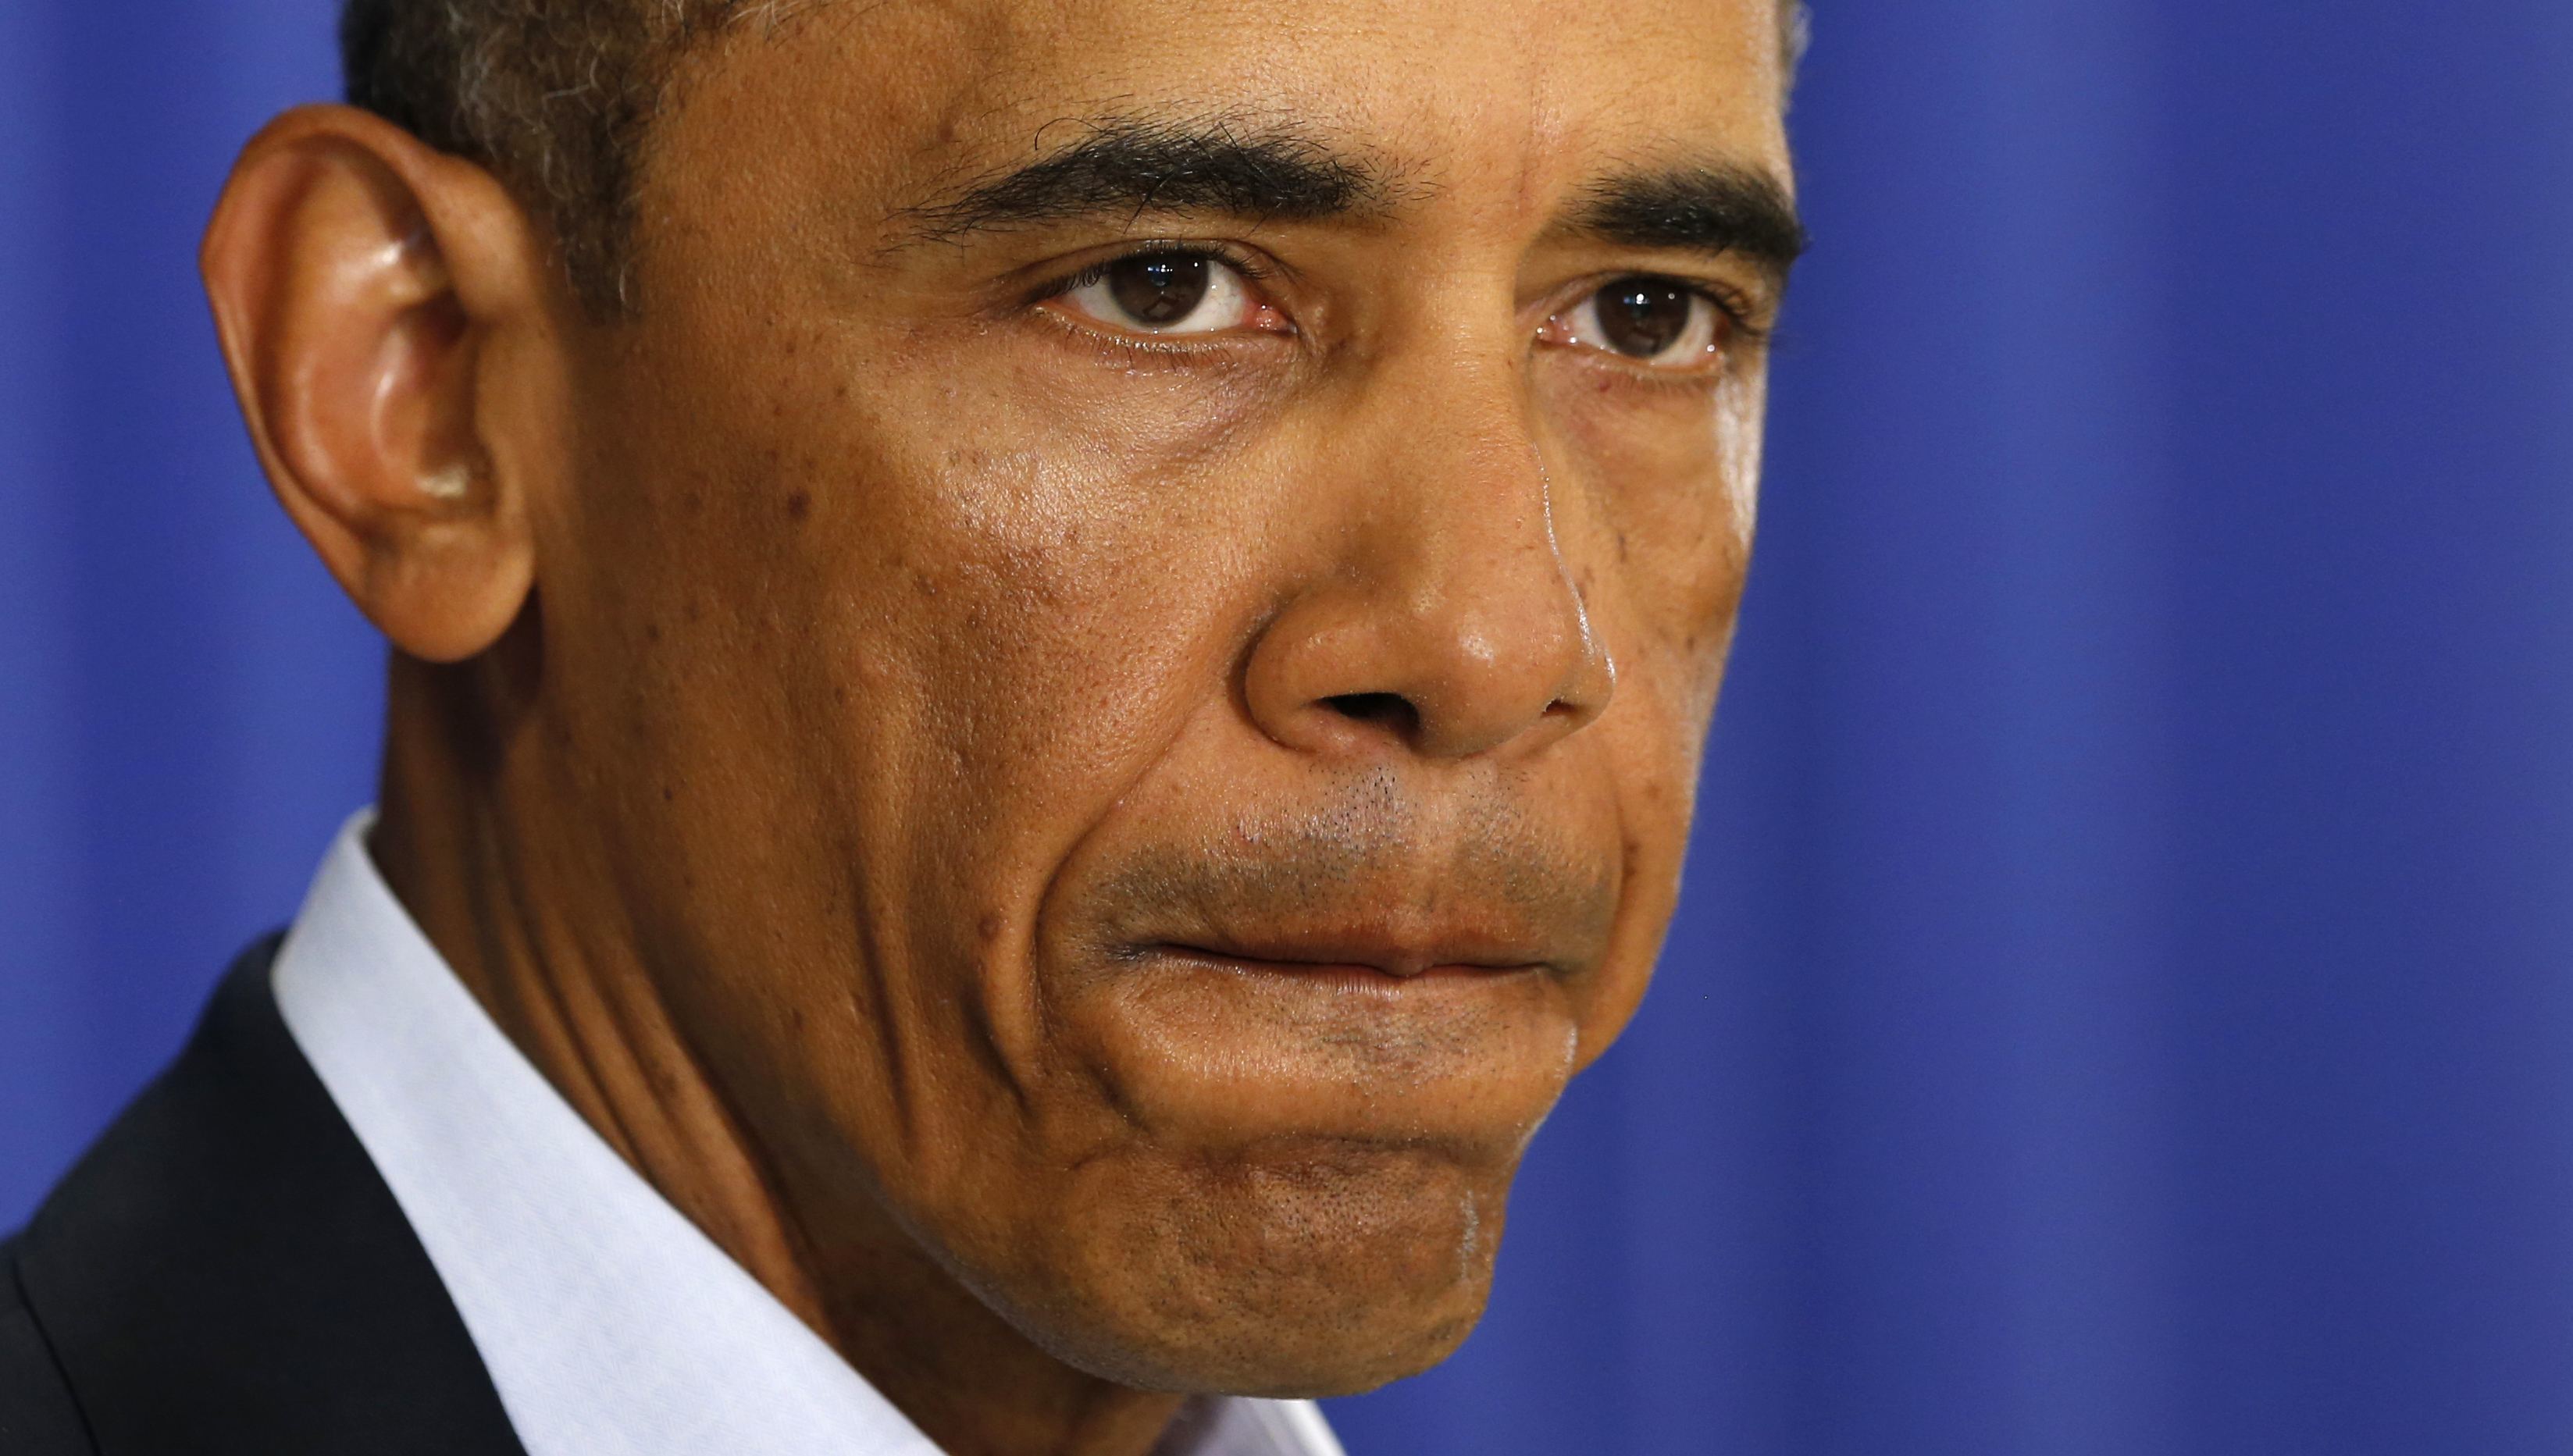 Αποκάλυψη! Ο “συγκλονισμένος” Ομπάμα ήξερε για τον αποκεφαλισμό, αλλά δεν τον απέτρεψε!